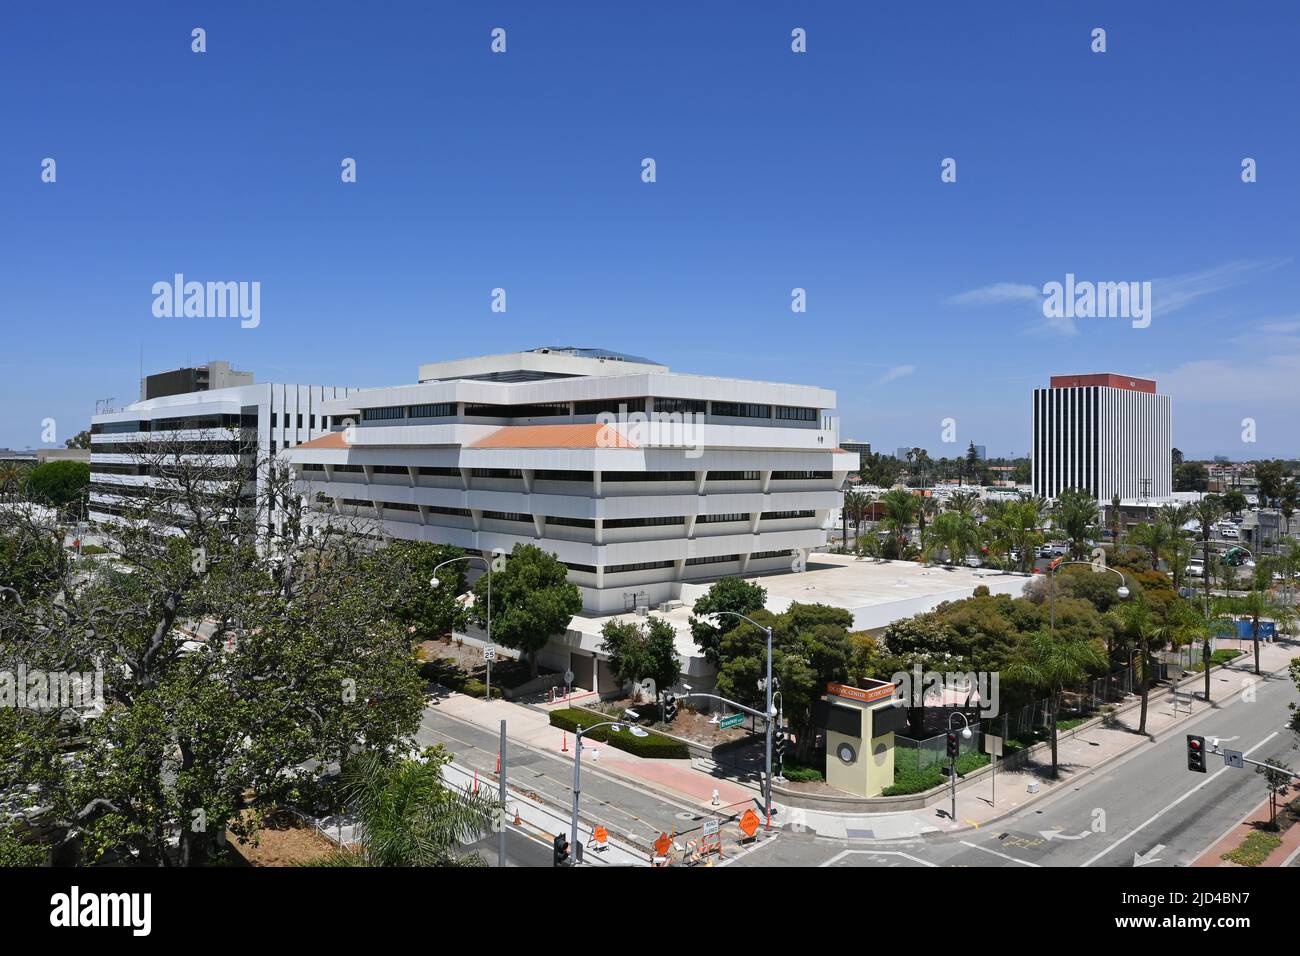 SANTA ANA, KALIFORNIEN - 17 JUN 2022: Orange County Civic Center aus einem hohen Blickwinkel Stockfoto